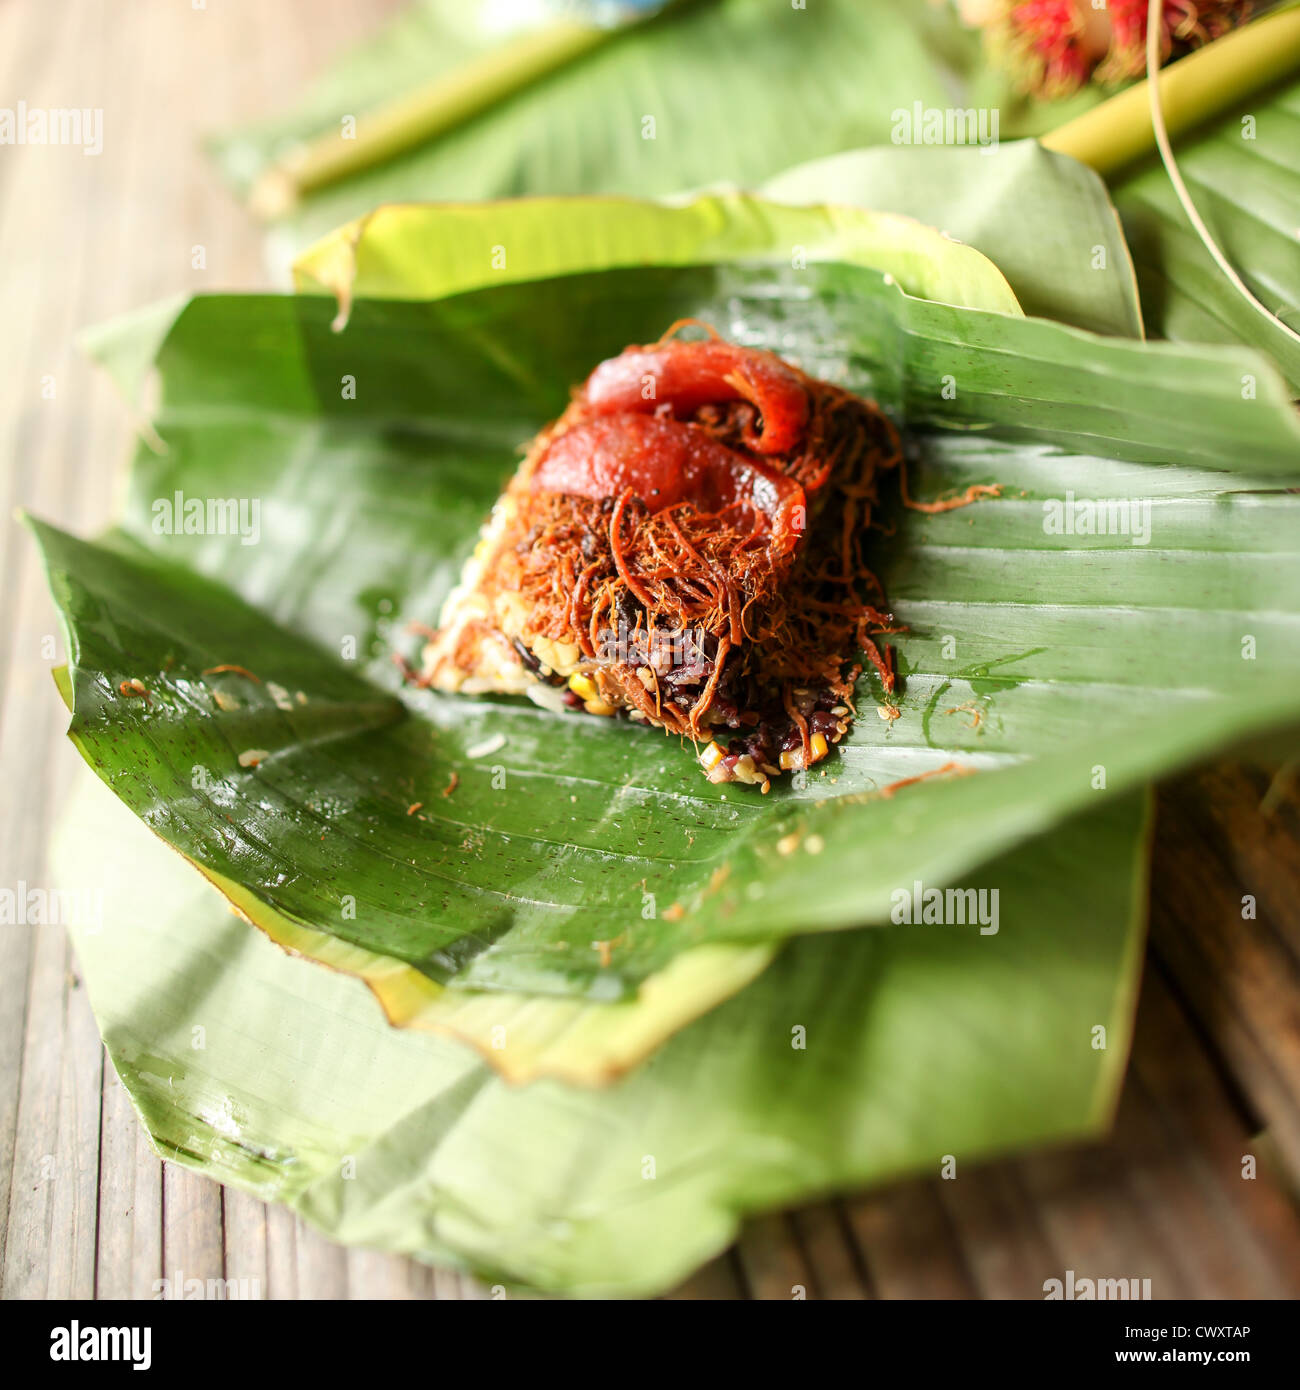 CHIANG MAI, THAILAND - 16. Juni 2012: Traditionelle thailändische Küche von klebrigen Reis und Schweinefleisch, Dessert, Früchte, Blätter Warpped in Bananenblättern. Stockfoto